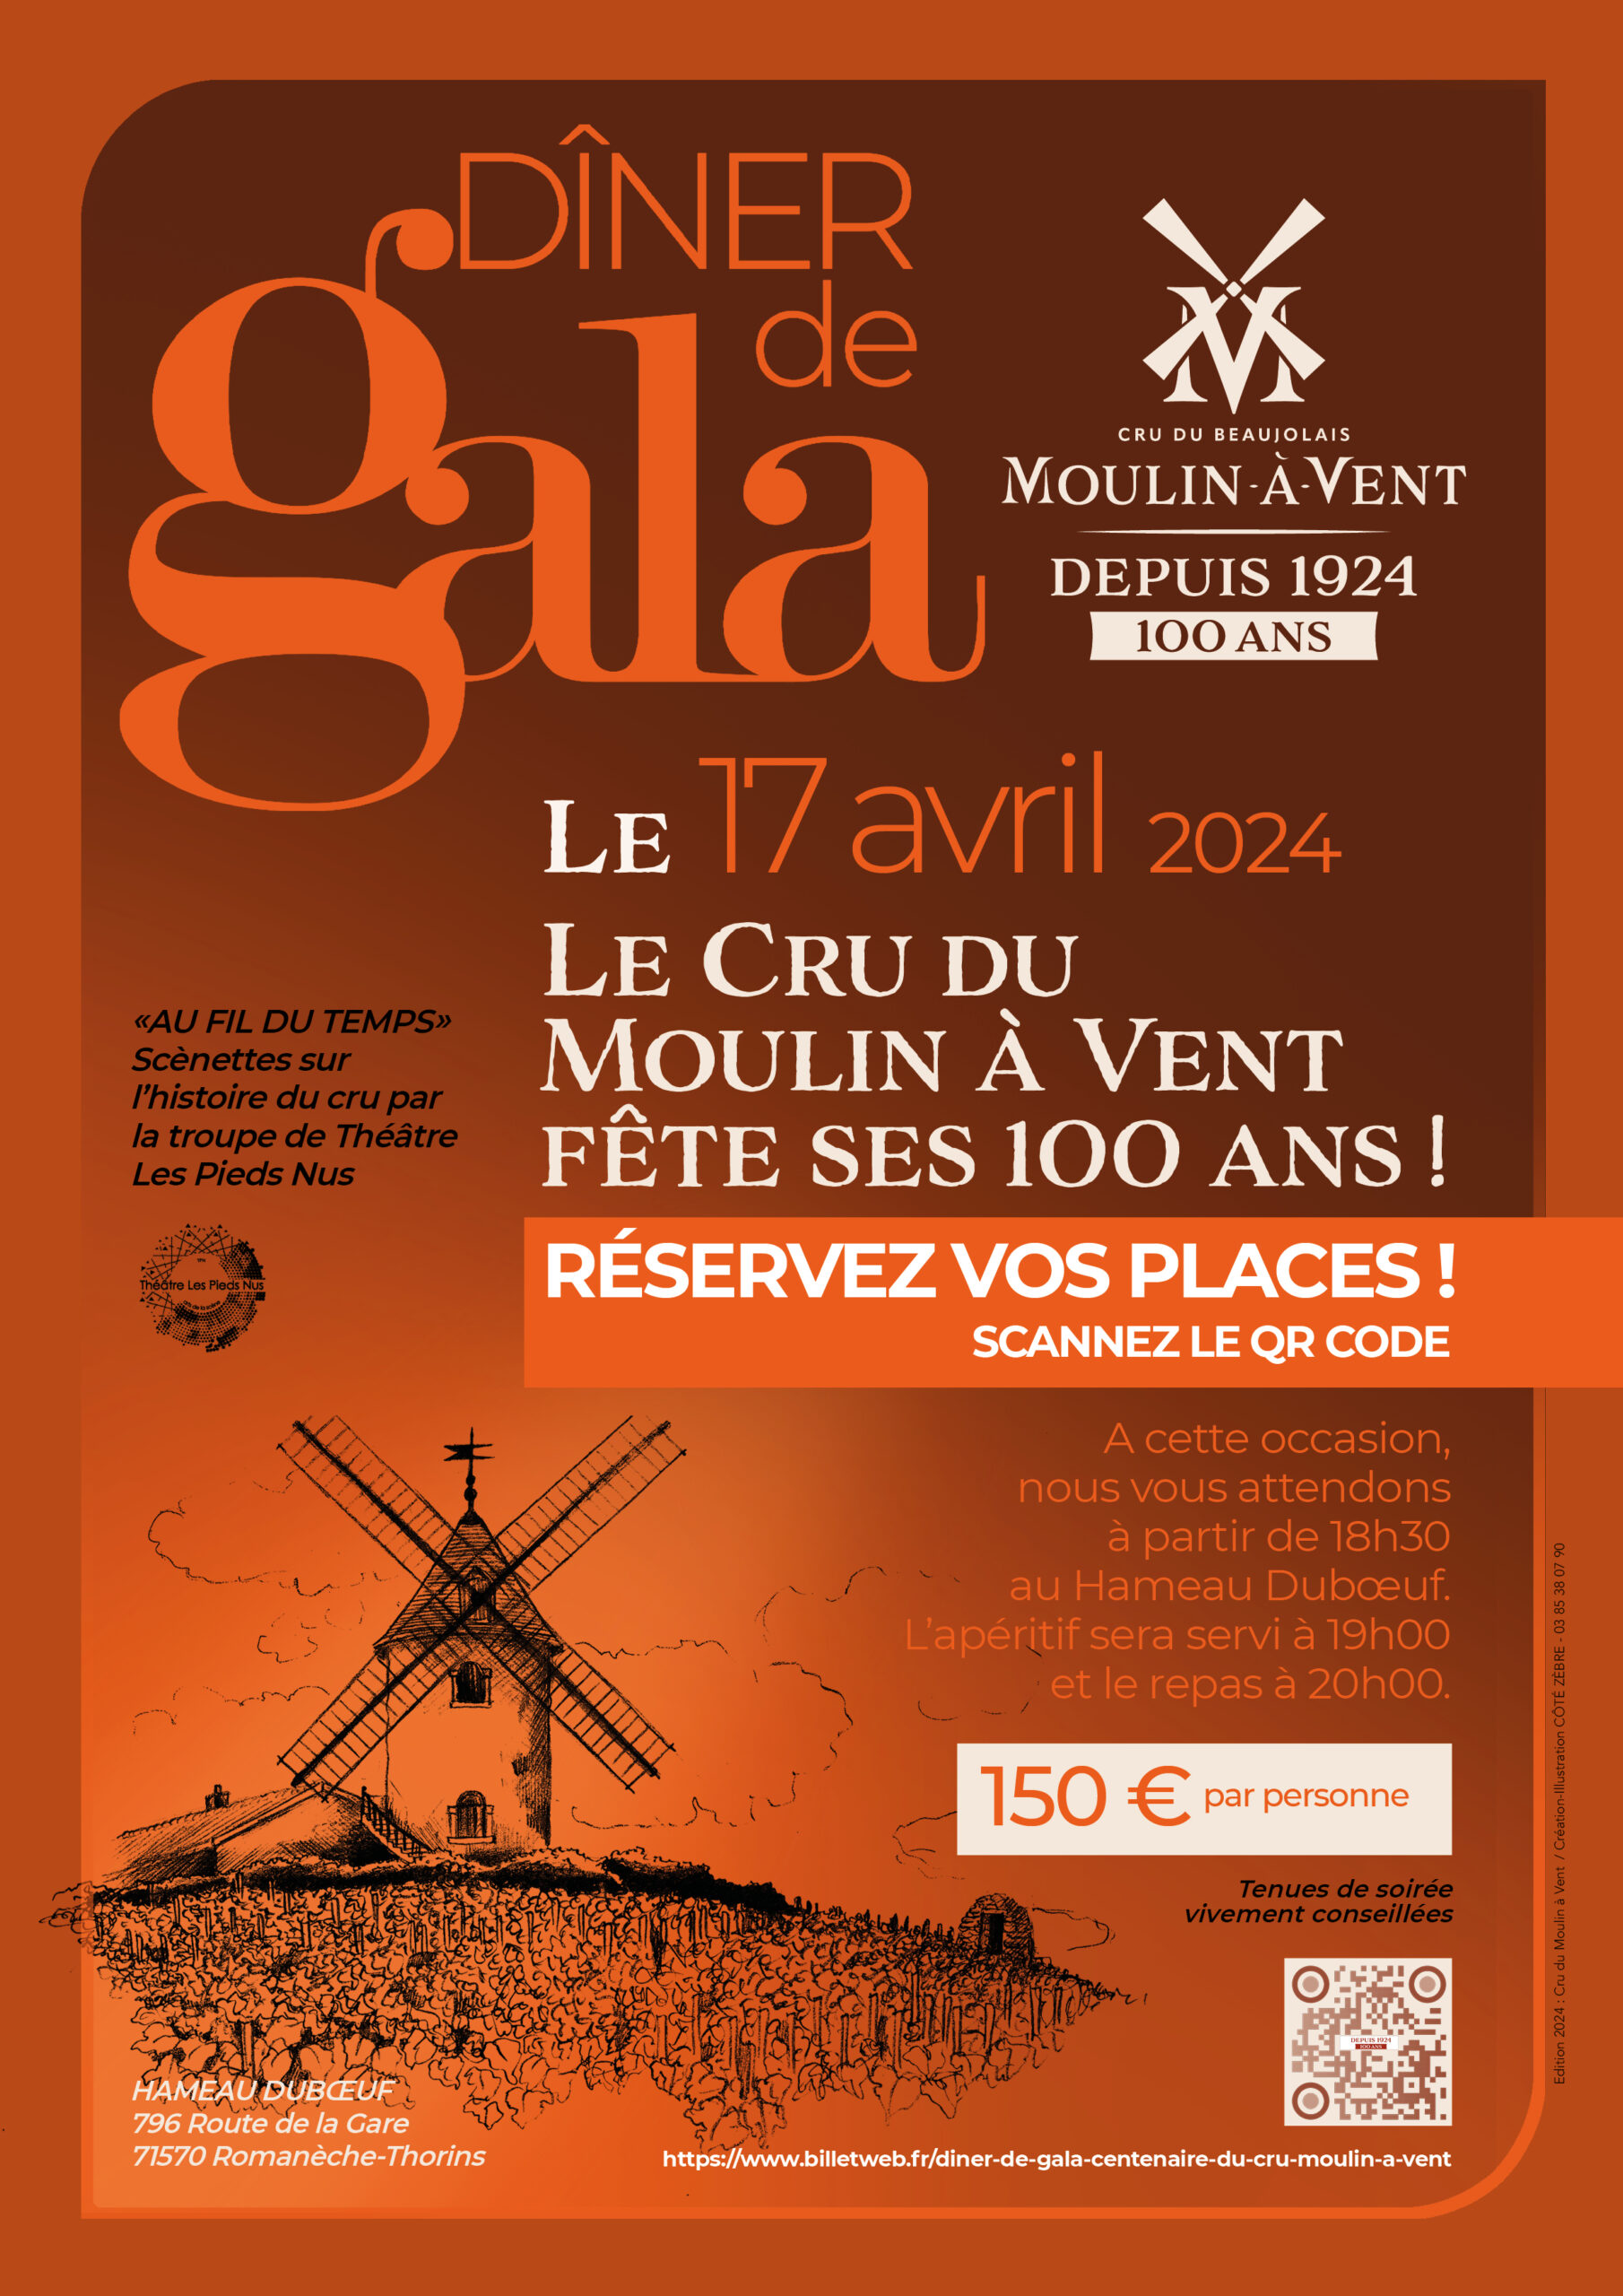 Dîner de Gala – Moulin-à-Vent fête ses 100 ans !